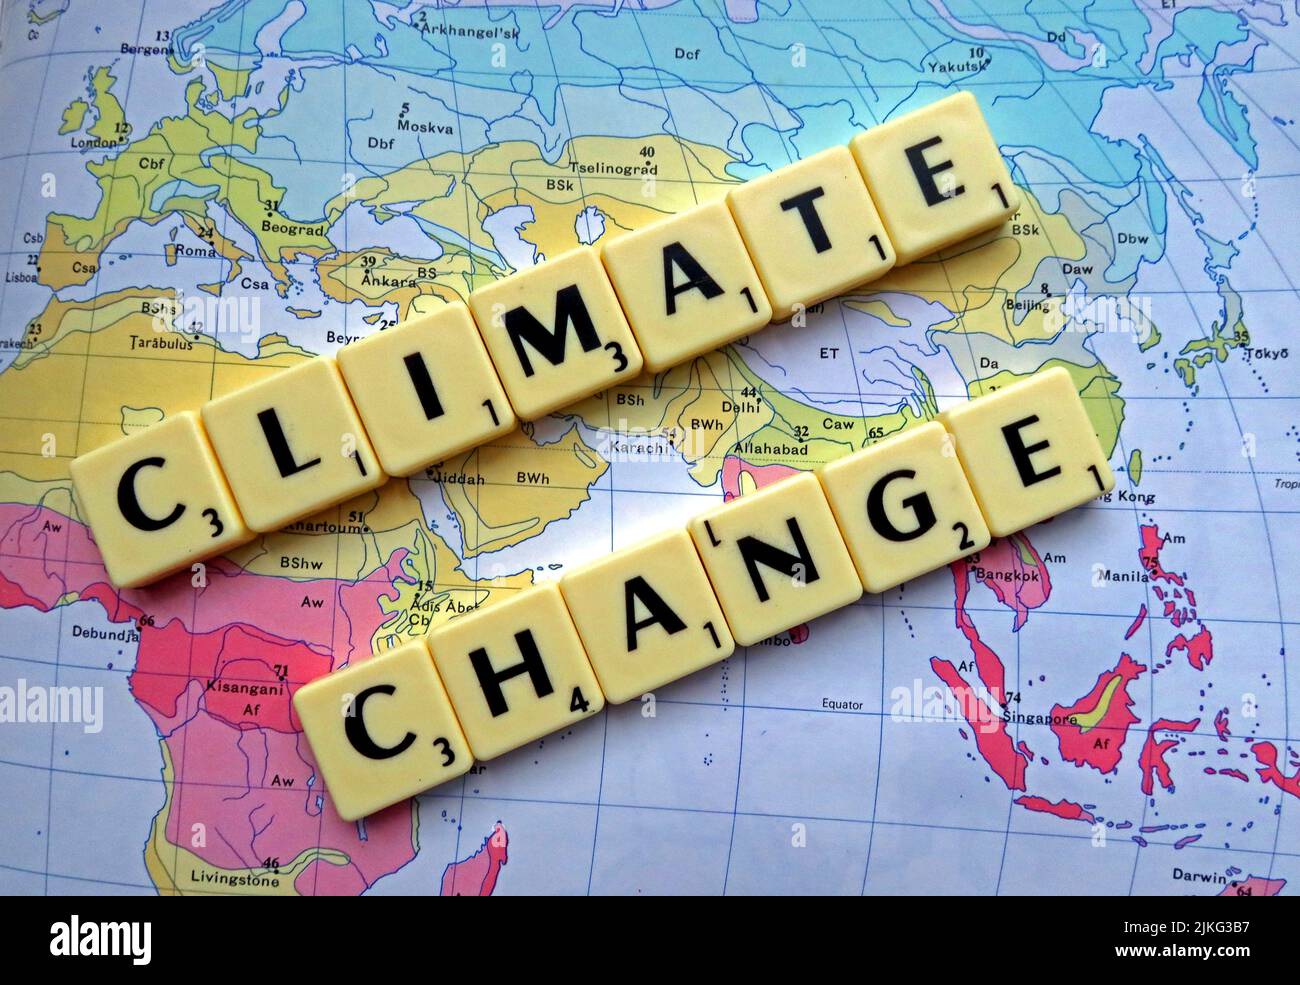 Changement climatique , le réchauffement climatique est écrit en Scrabble sur une carte Banque D'Images